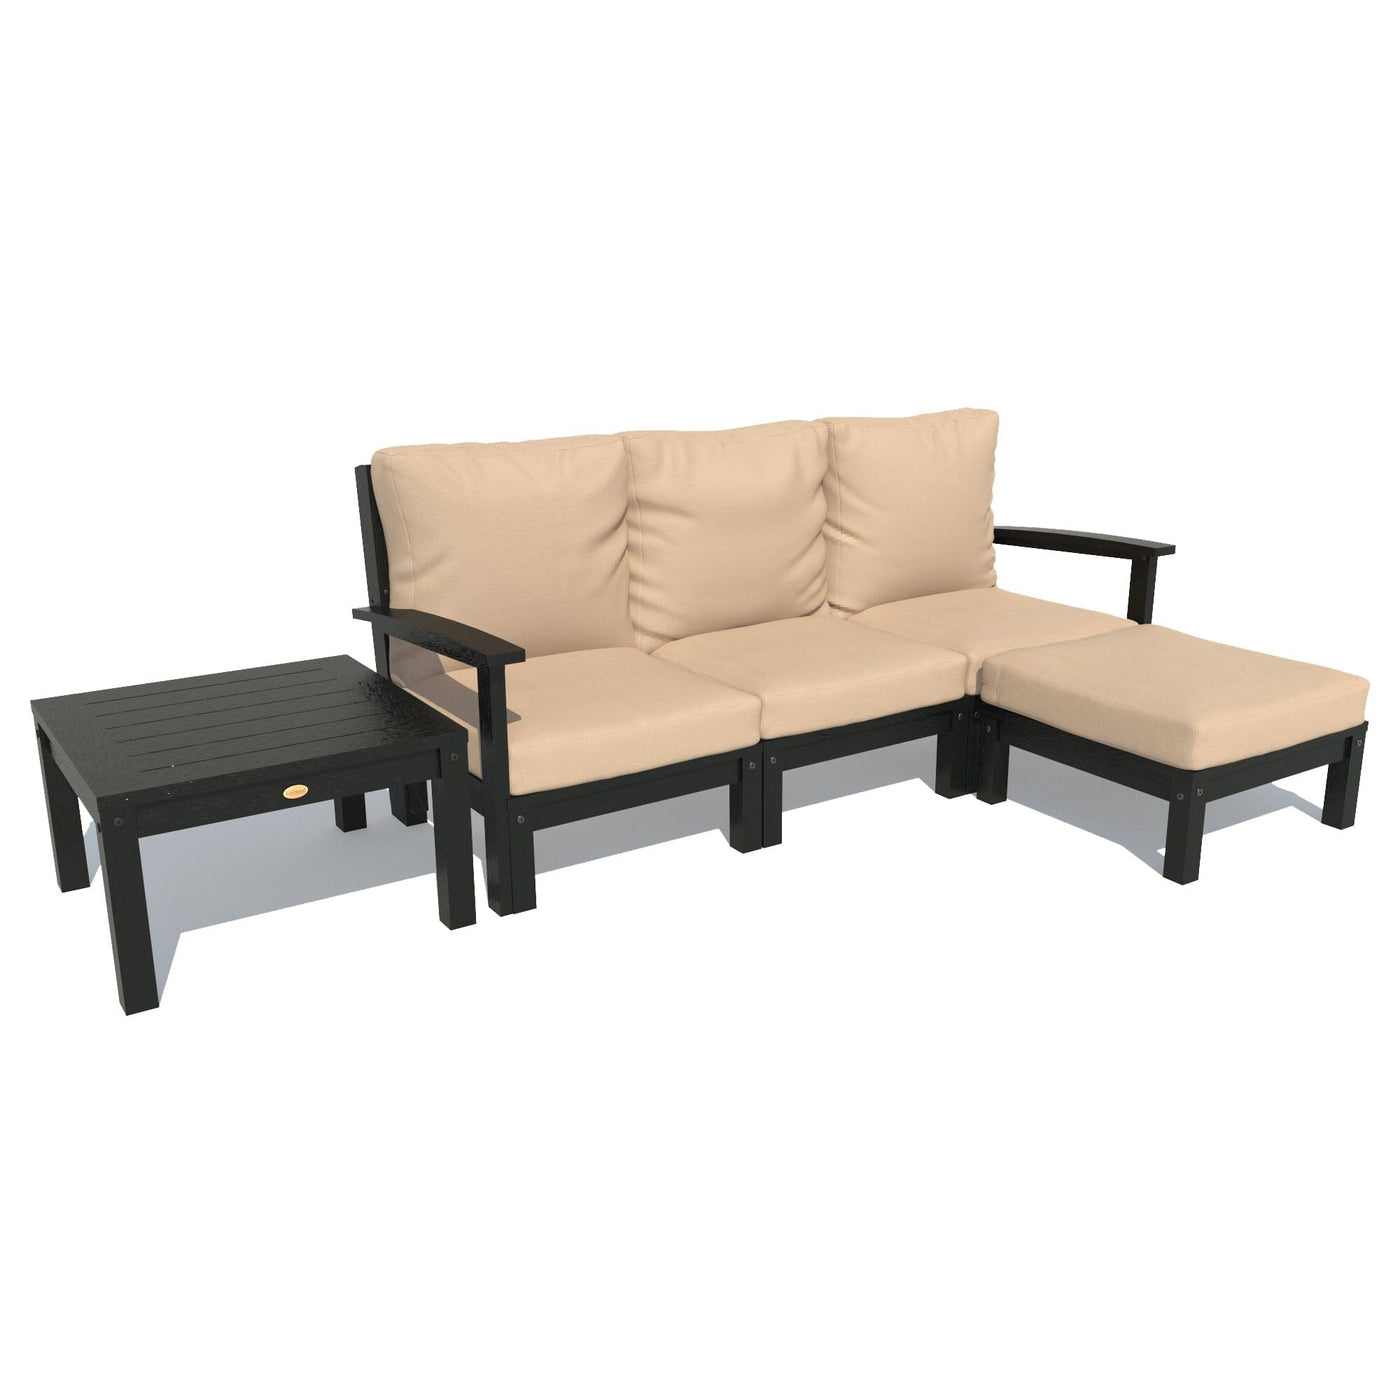 Bespoke Deep Seating: Sofa, Ottoman, and Side Table Deep Seating Highwood USA Driftwood Black 